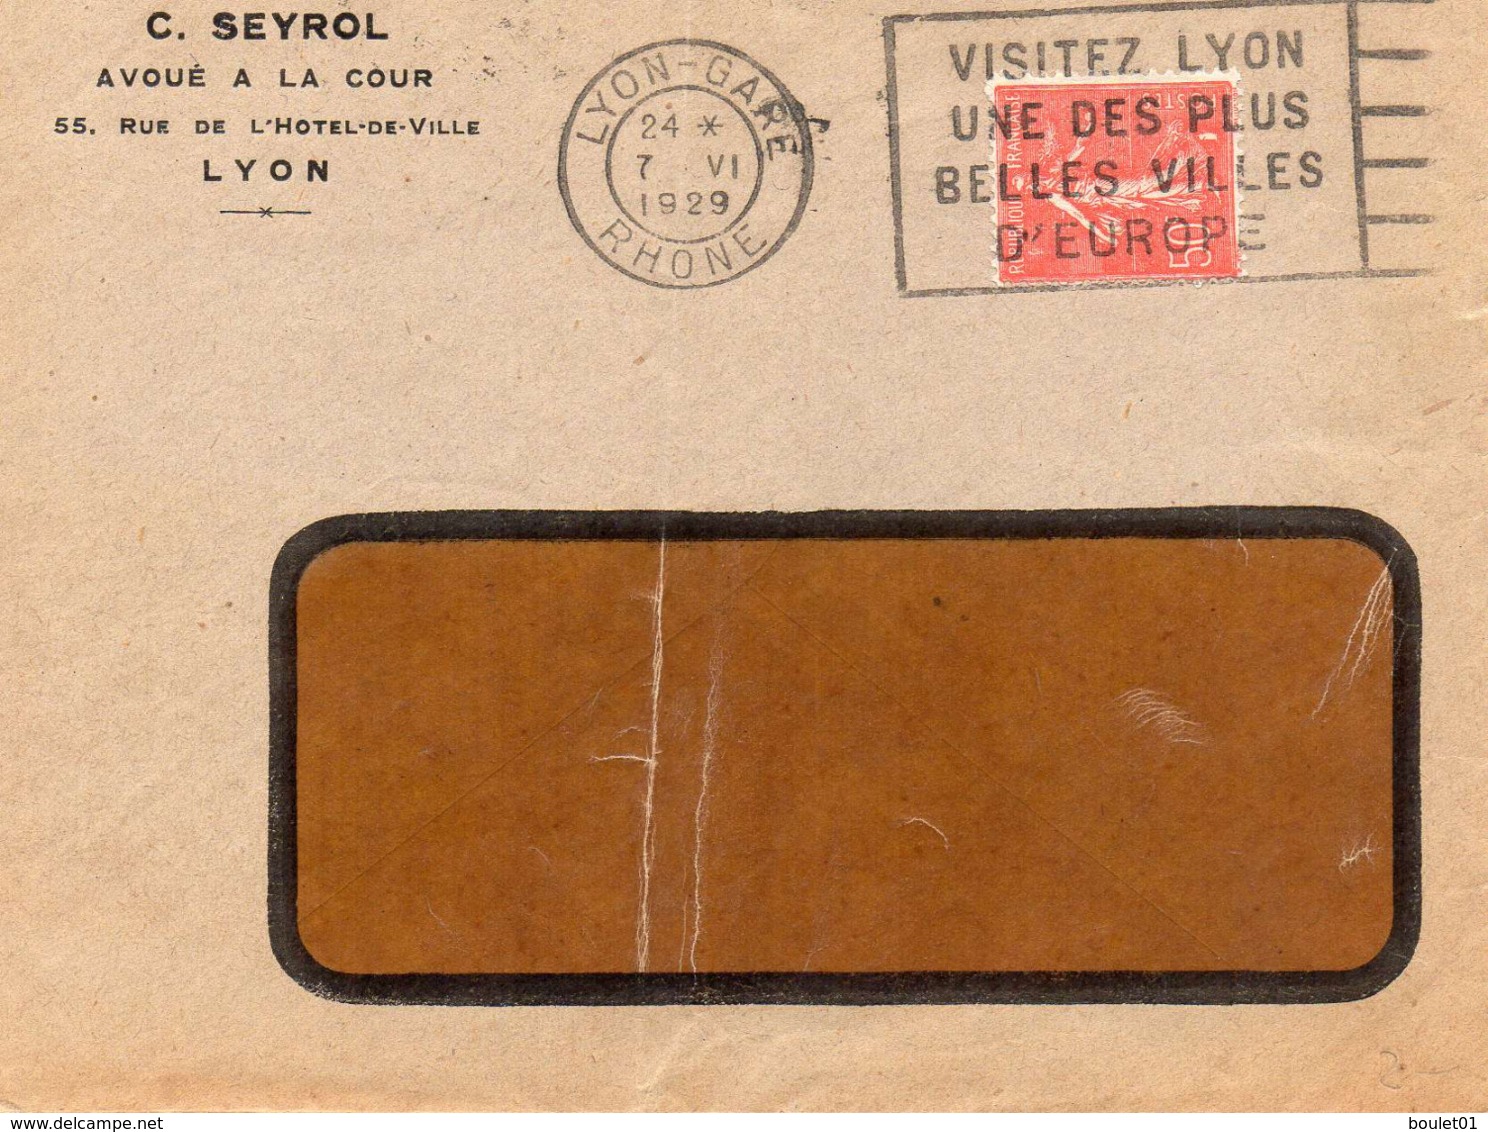 lot de 9 lettres et carte postale au départ de Lyon ( 9 scans)